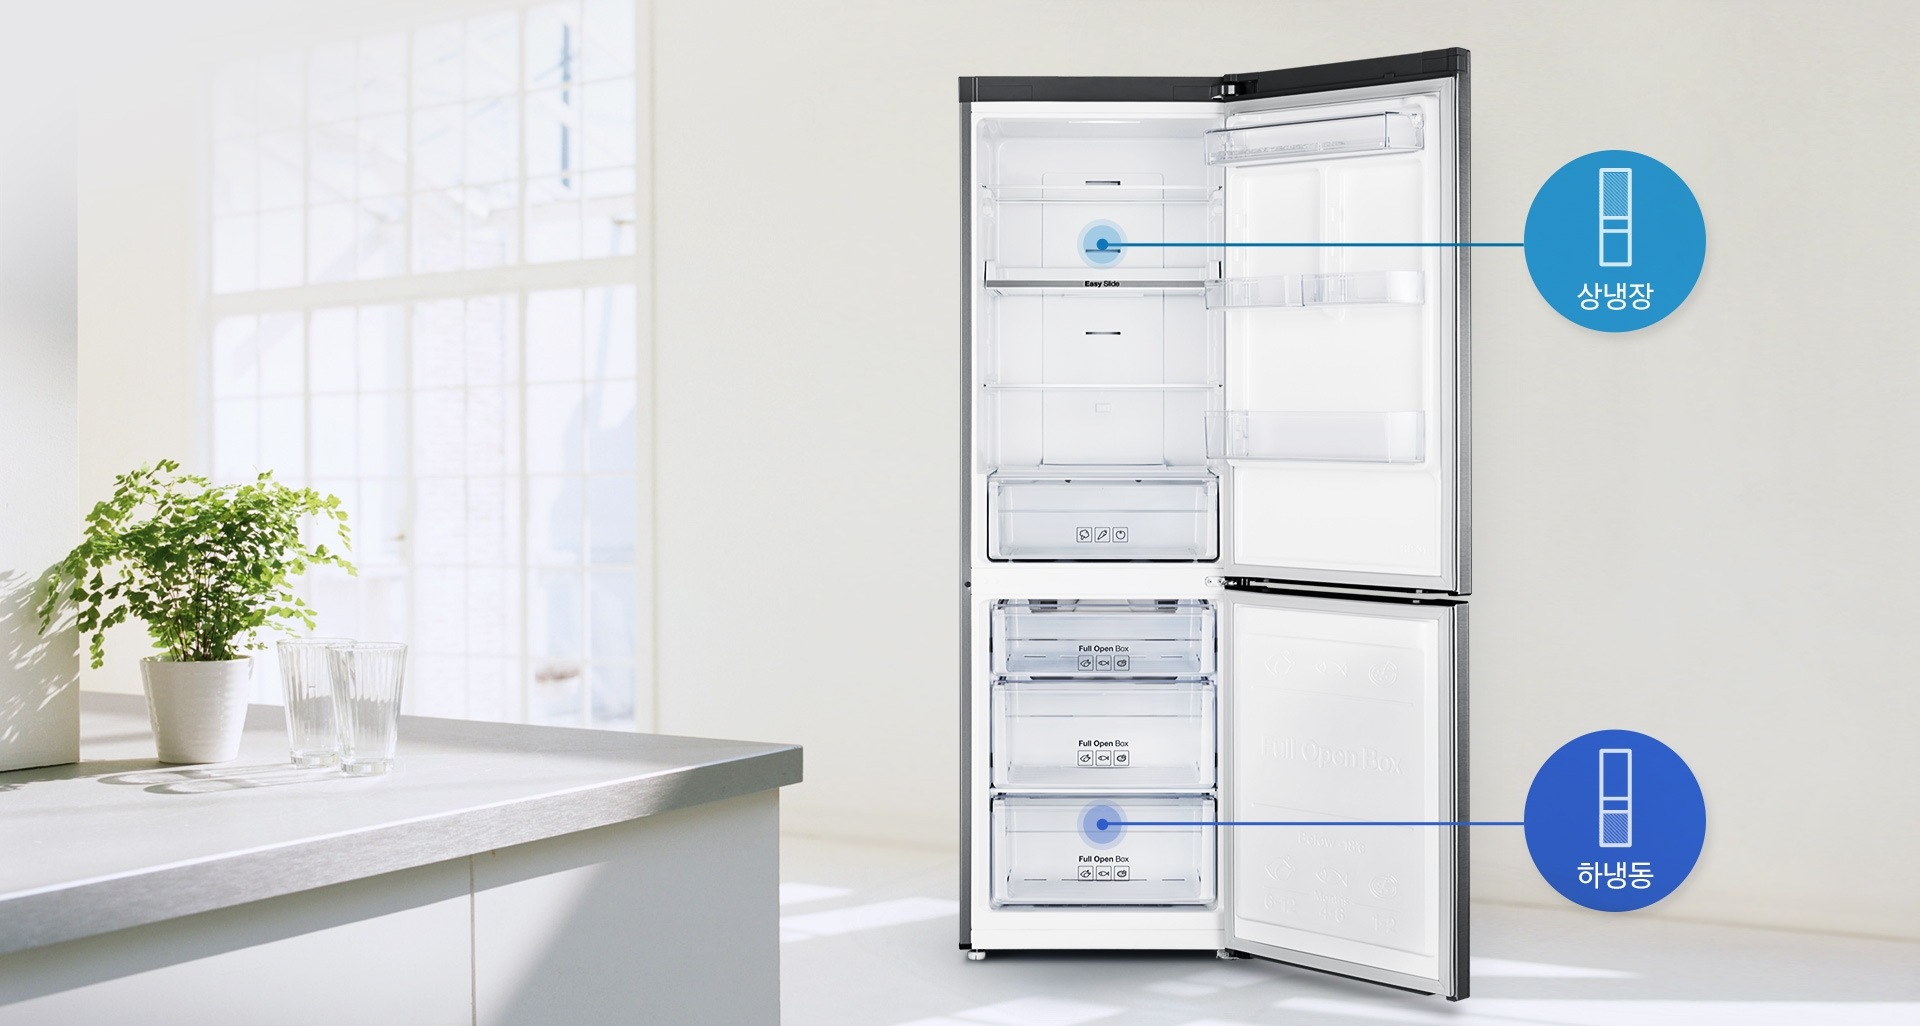 상,하단 냉장고 문이 모두 열려 있으며 각각 위쪽은 상냉장, 아래쪽은 하냉동이 가능함을 보여주고 있습니다.